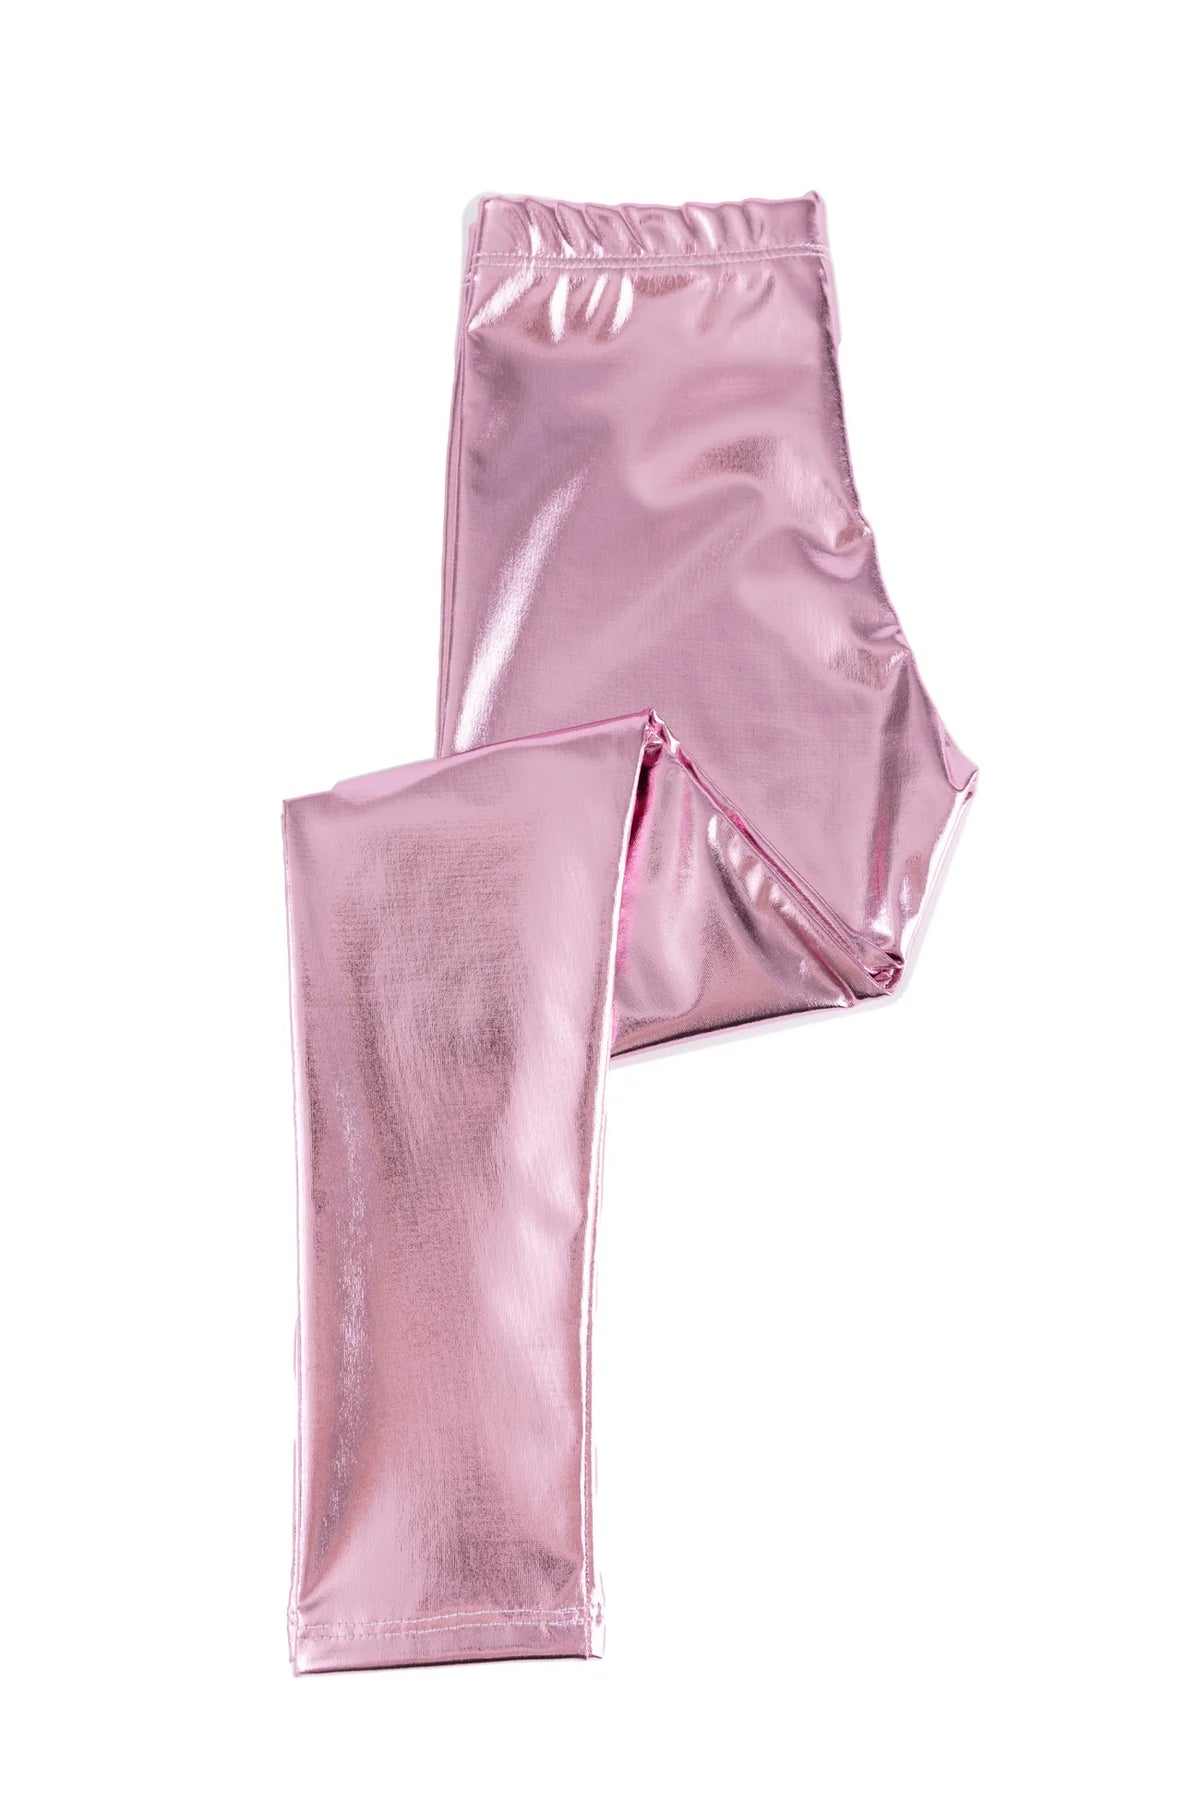 Pink Love Life Metallic Leggings Cover